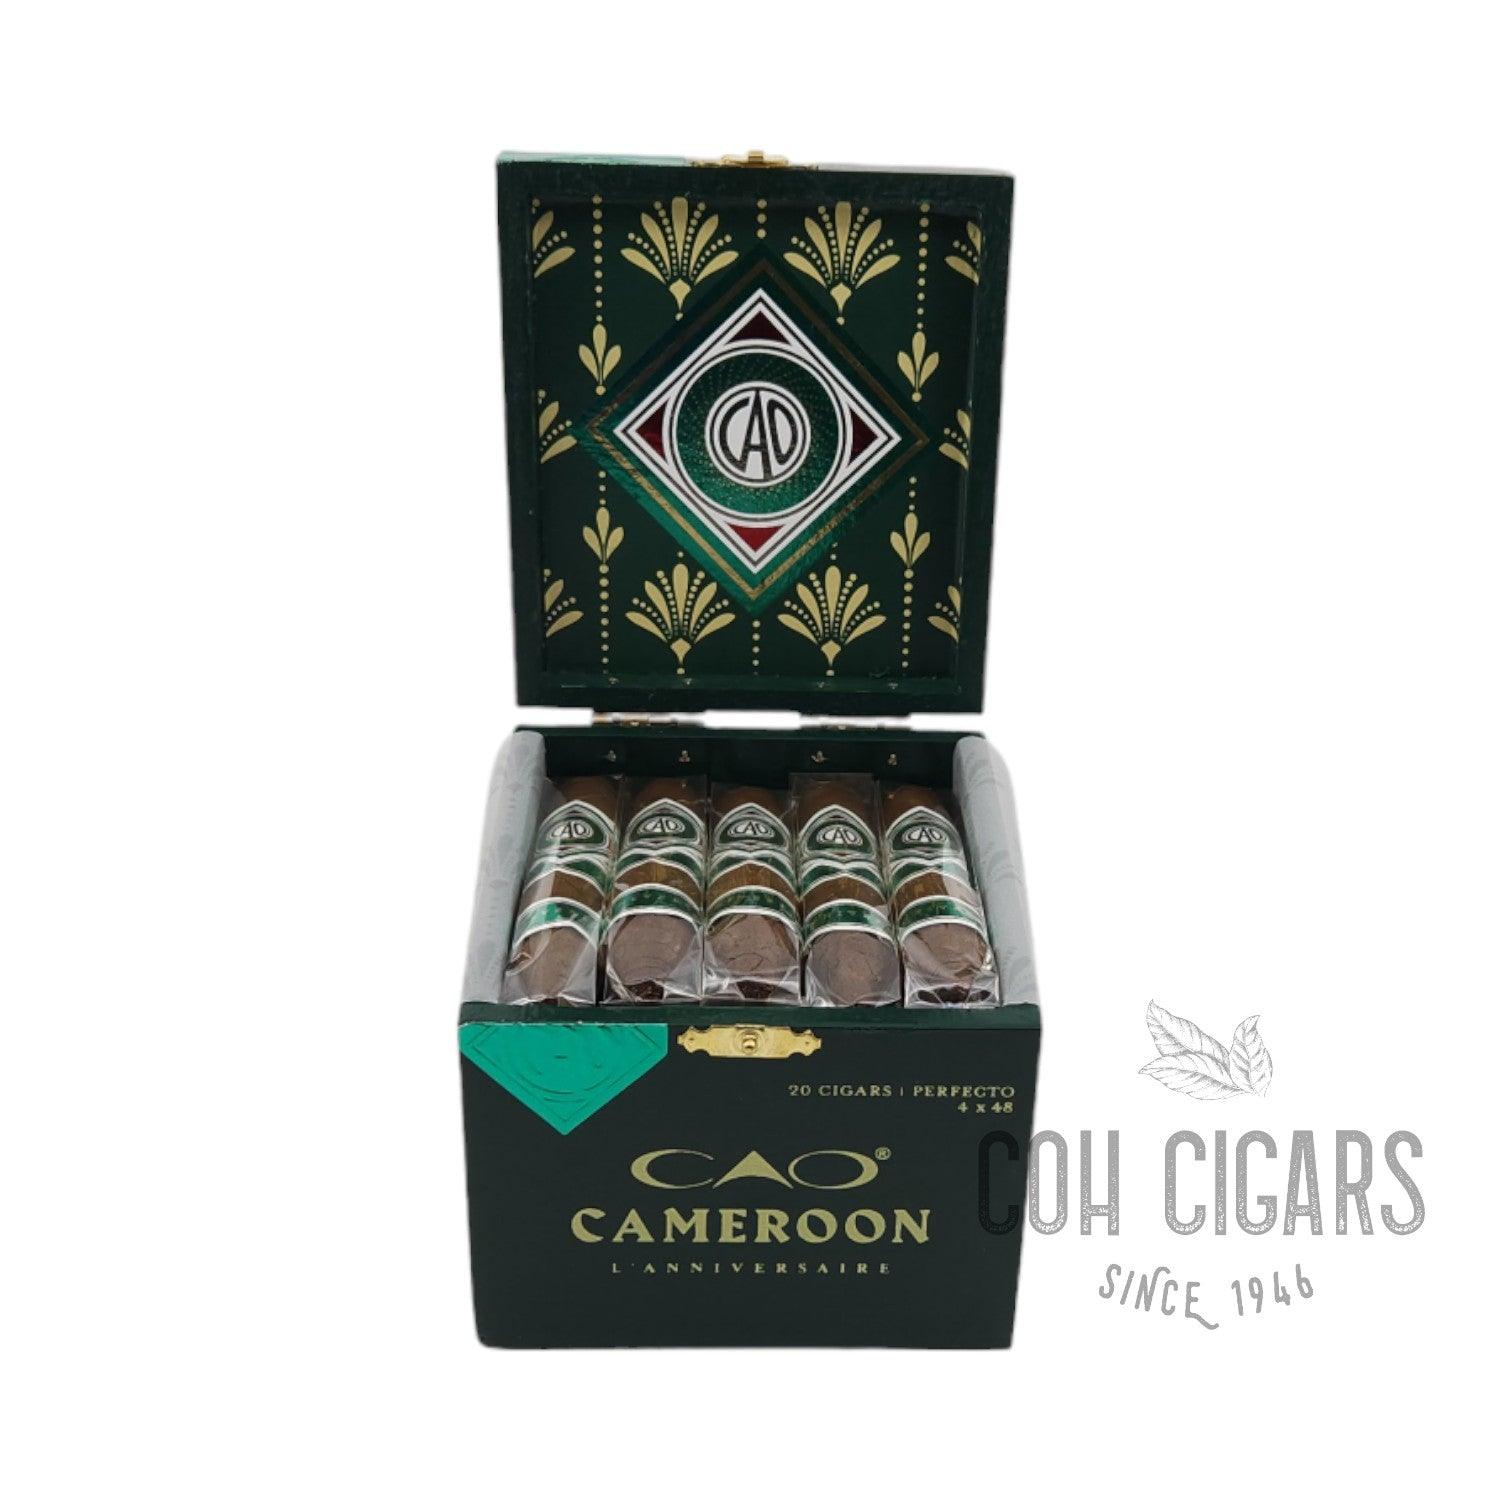 CAO Cigar | Cameroon L'Anniversaire Perfecto | Box 20 - HK CohCigars